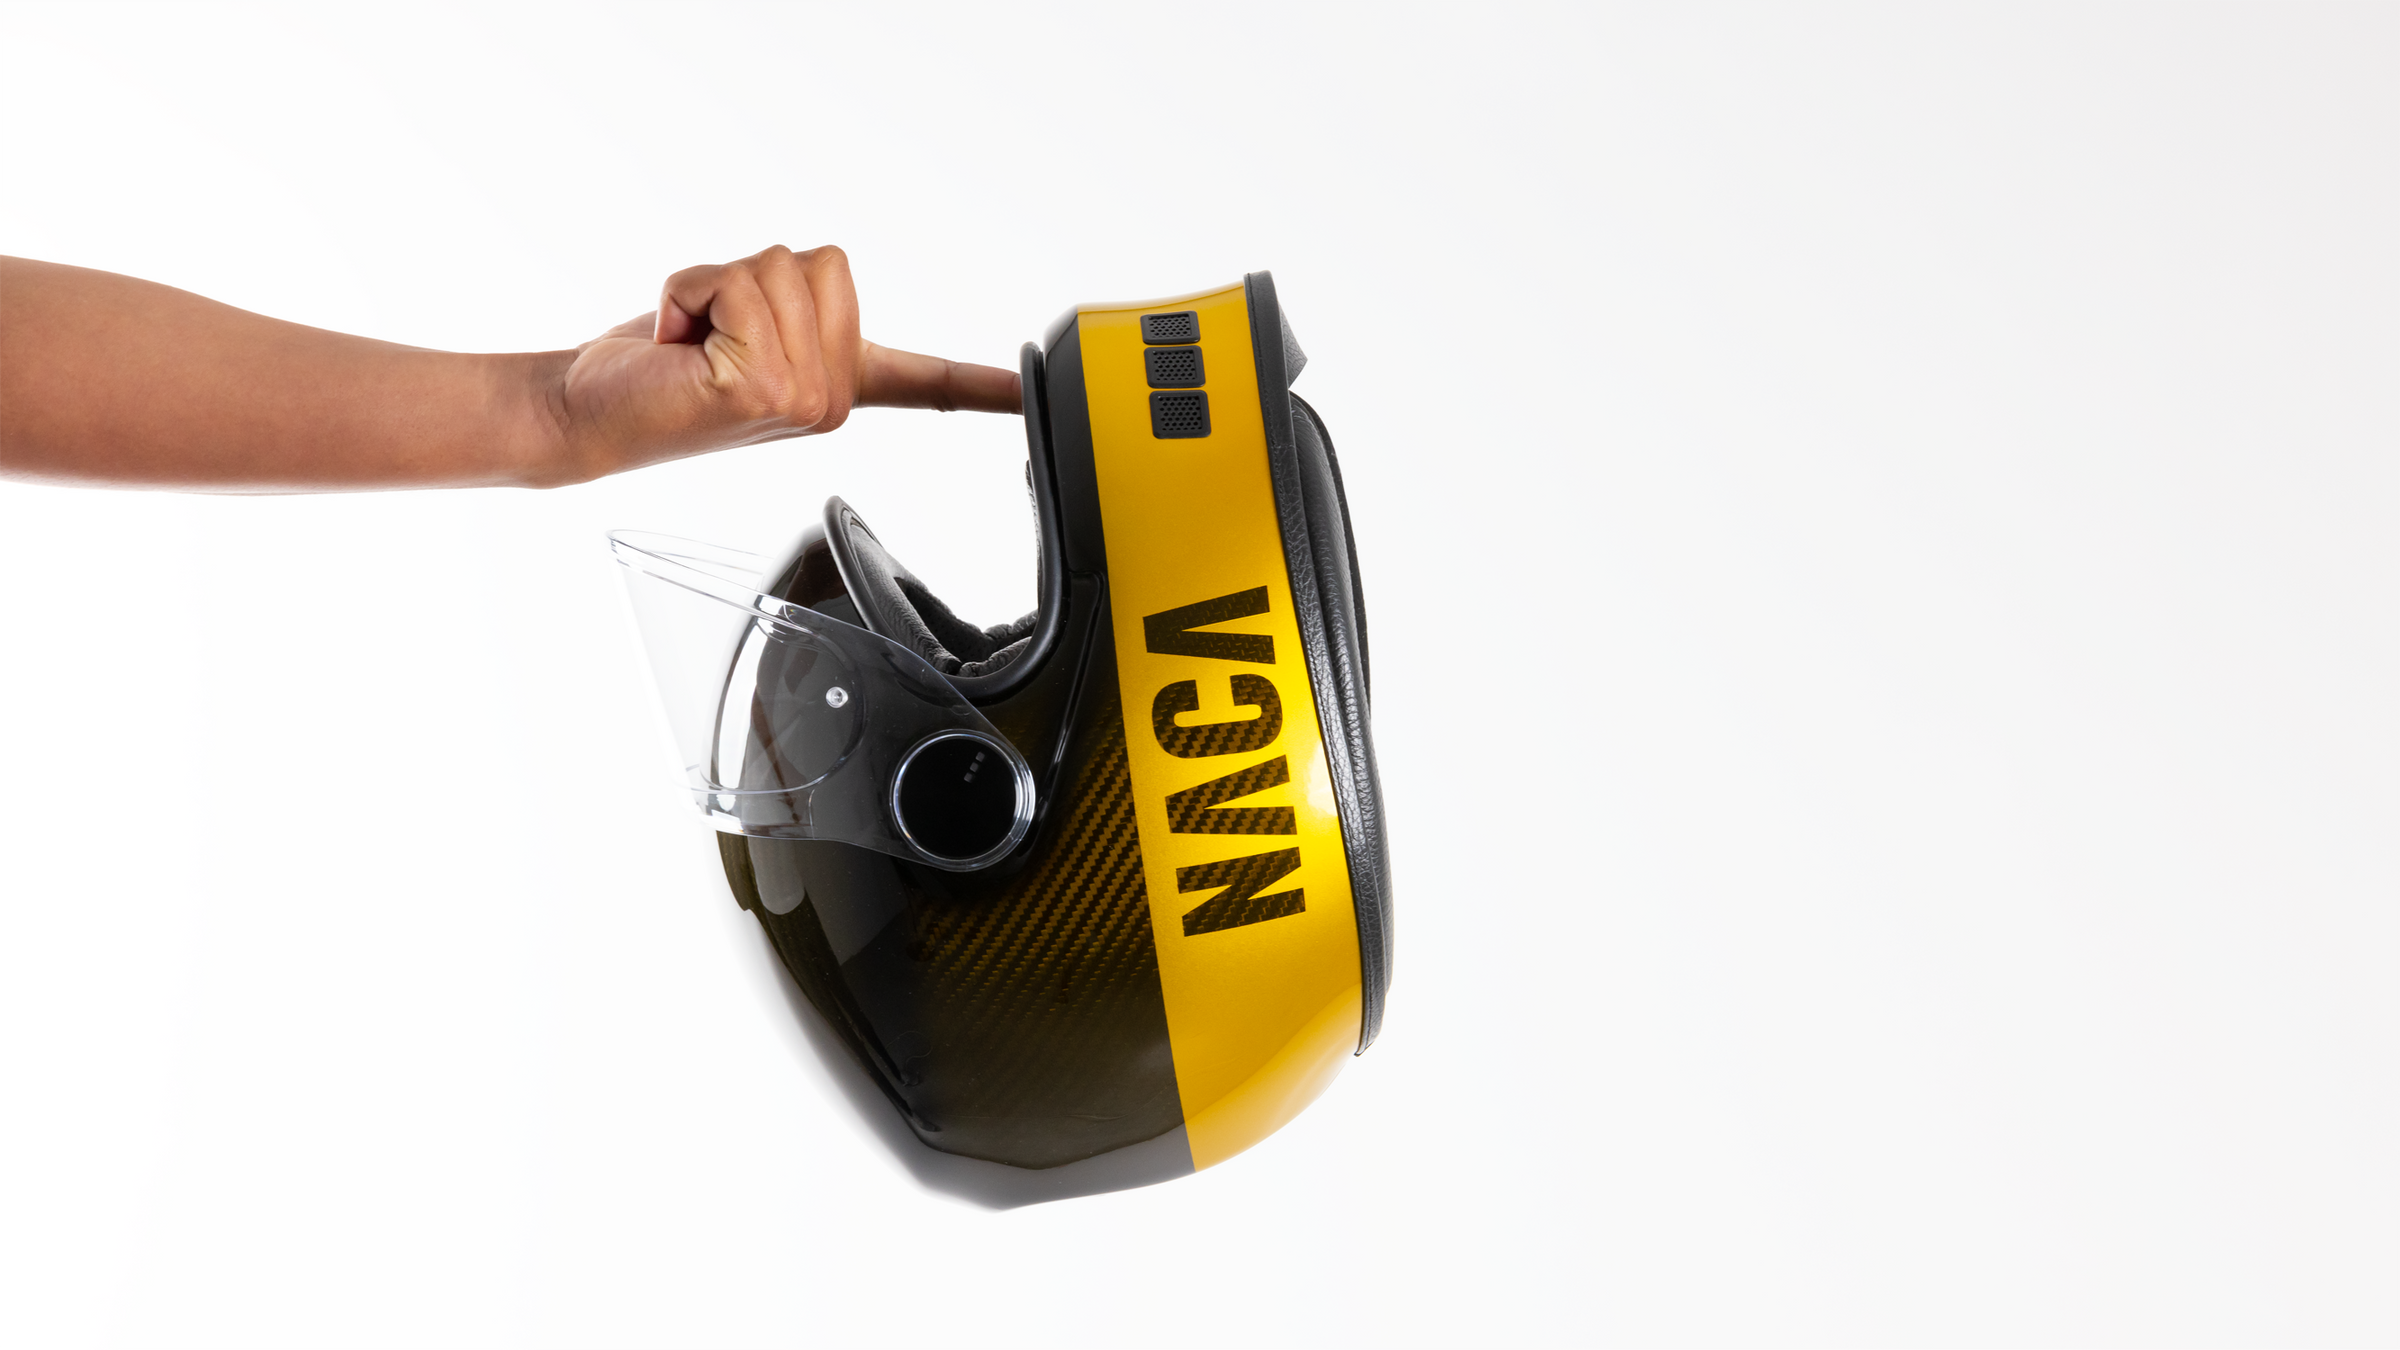 NACA Helmet - Casques de Moto, Vélo et Équitation en Carbone